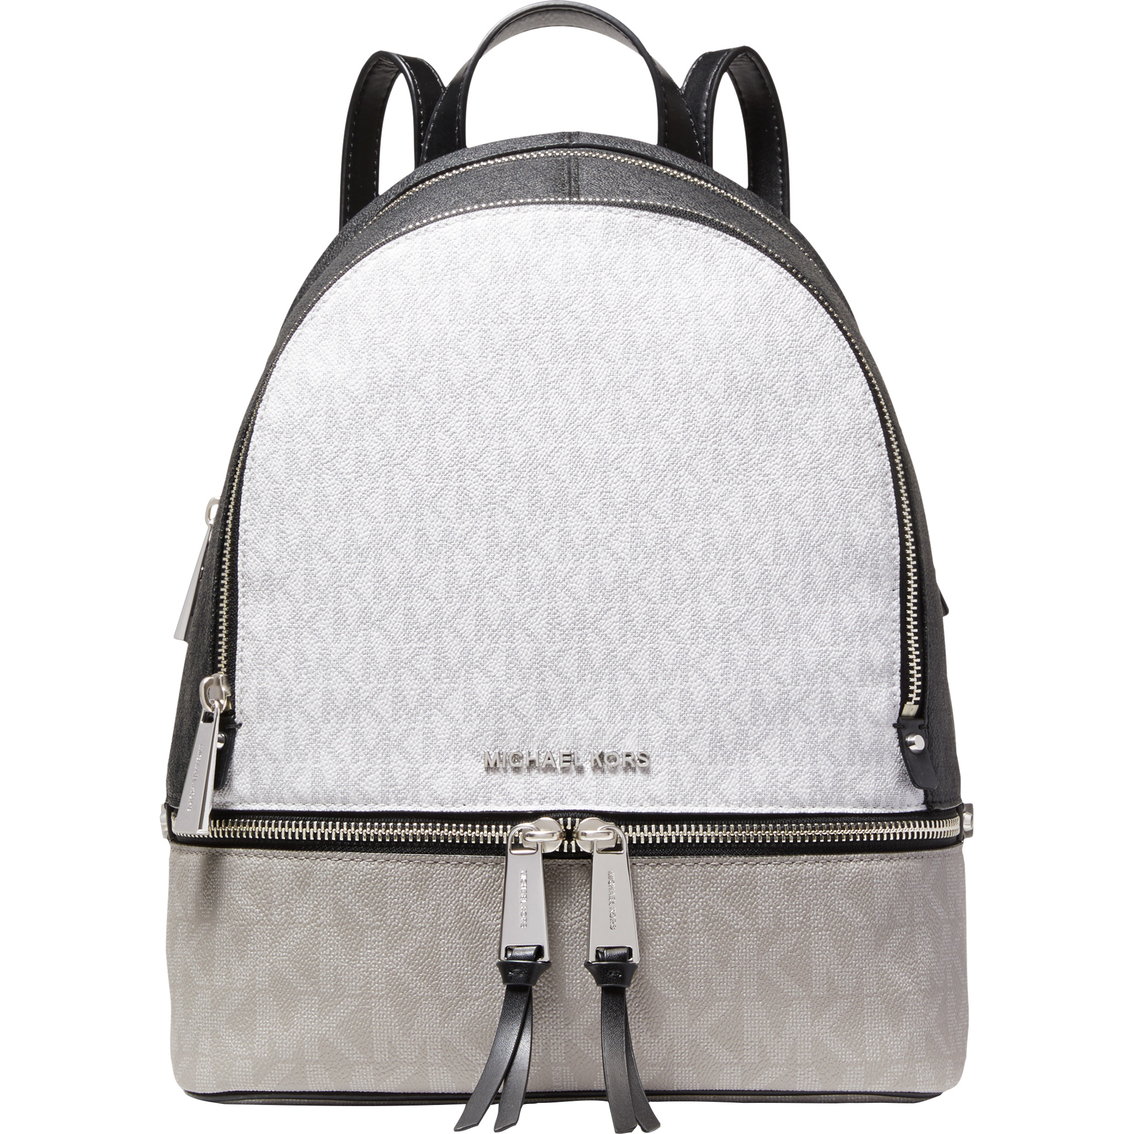 Michael Kors Rhea Tricolor Zip Medium Backpack | Backpacks | Clothing ...